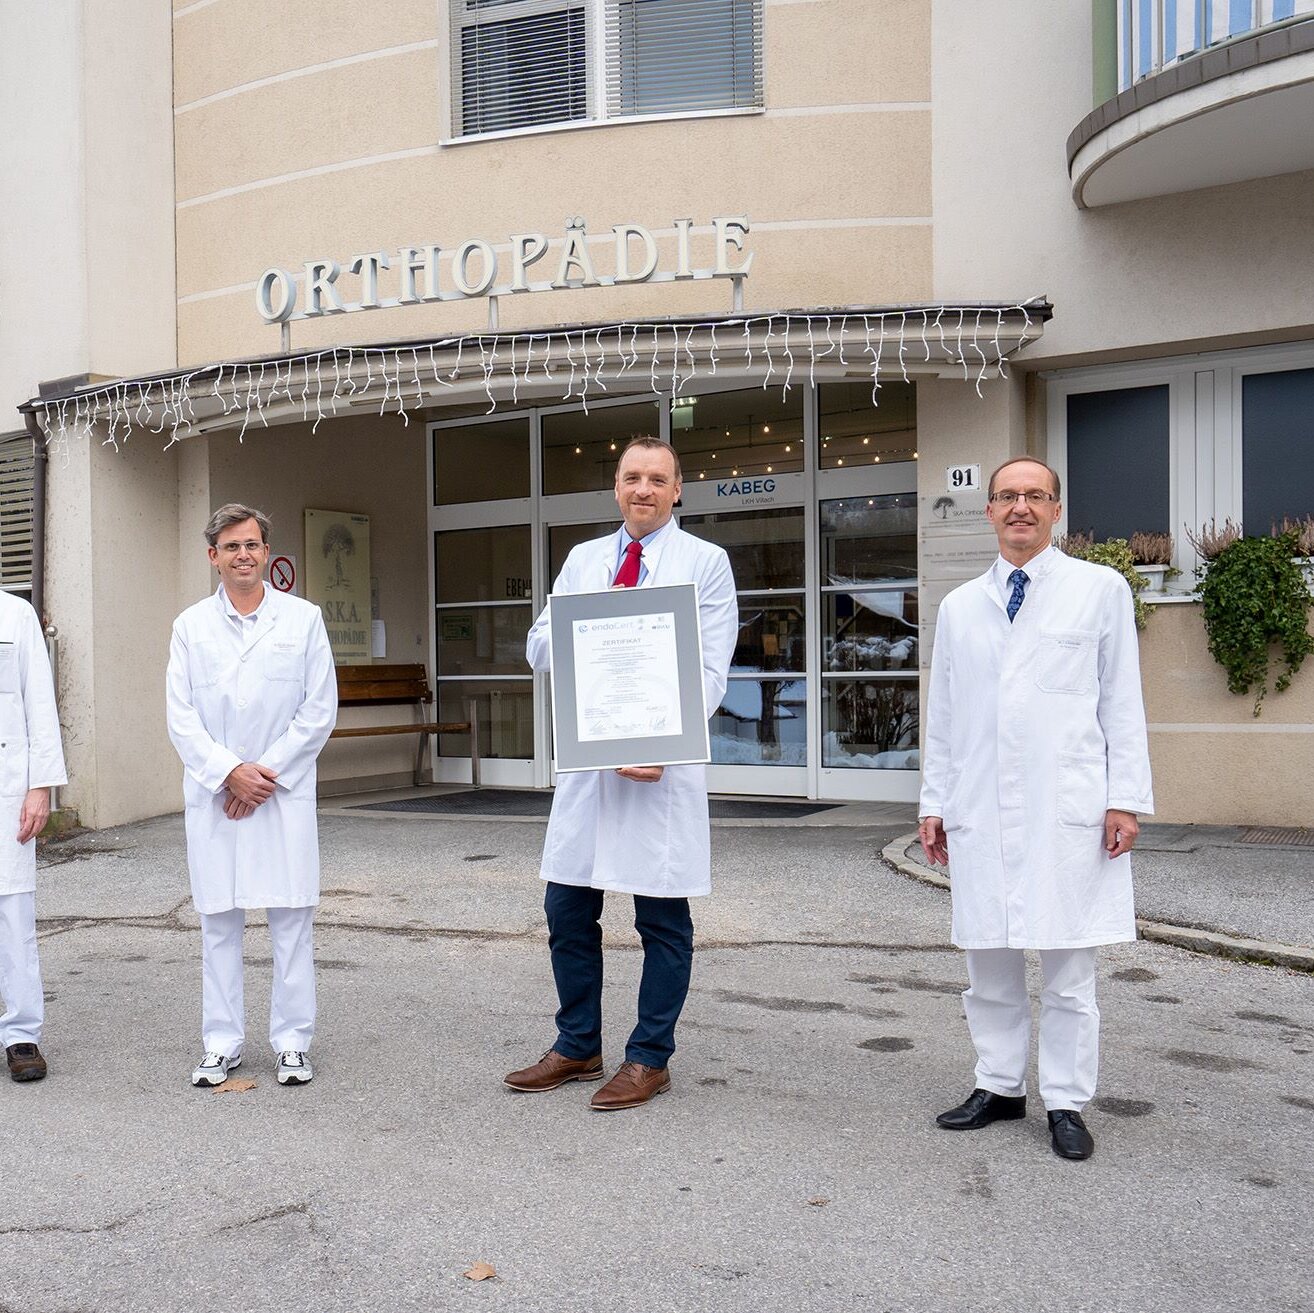 Das Team der SKA für Orthopädie präsentiert stolz seine Auszeichnung als Endo-Prothetik Zentrum